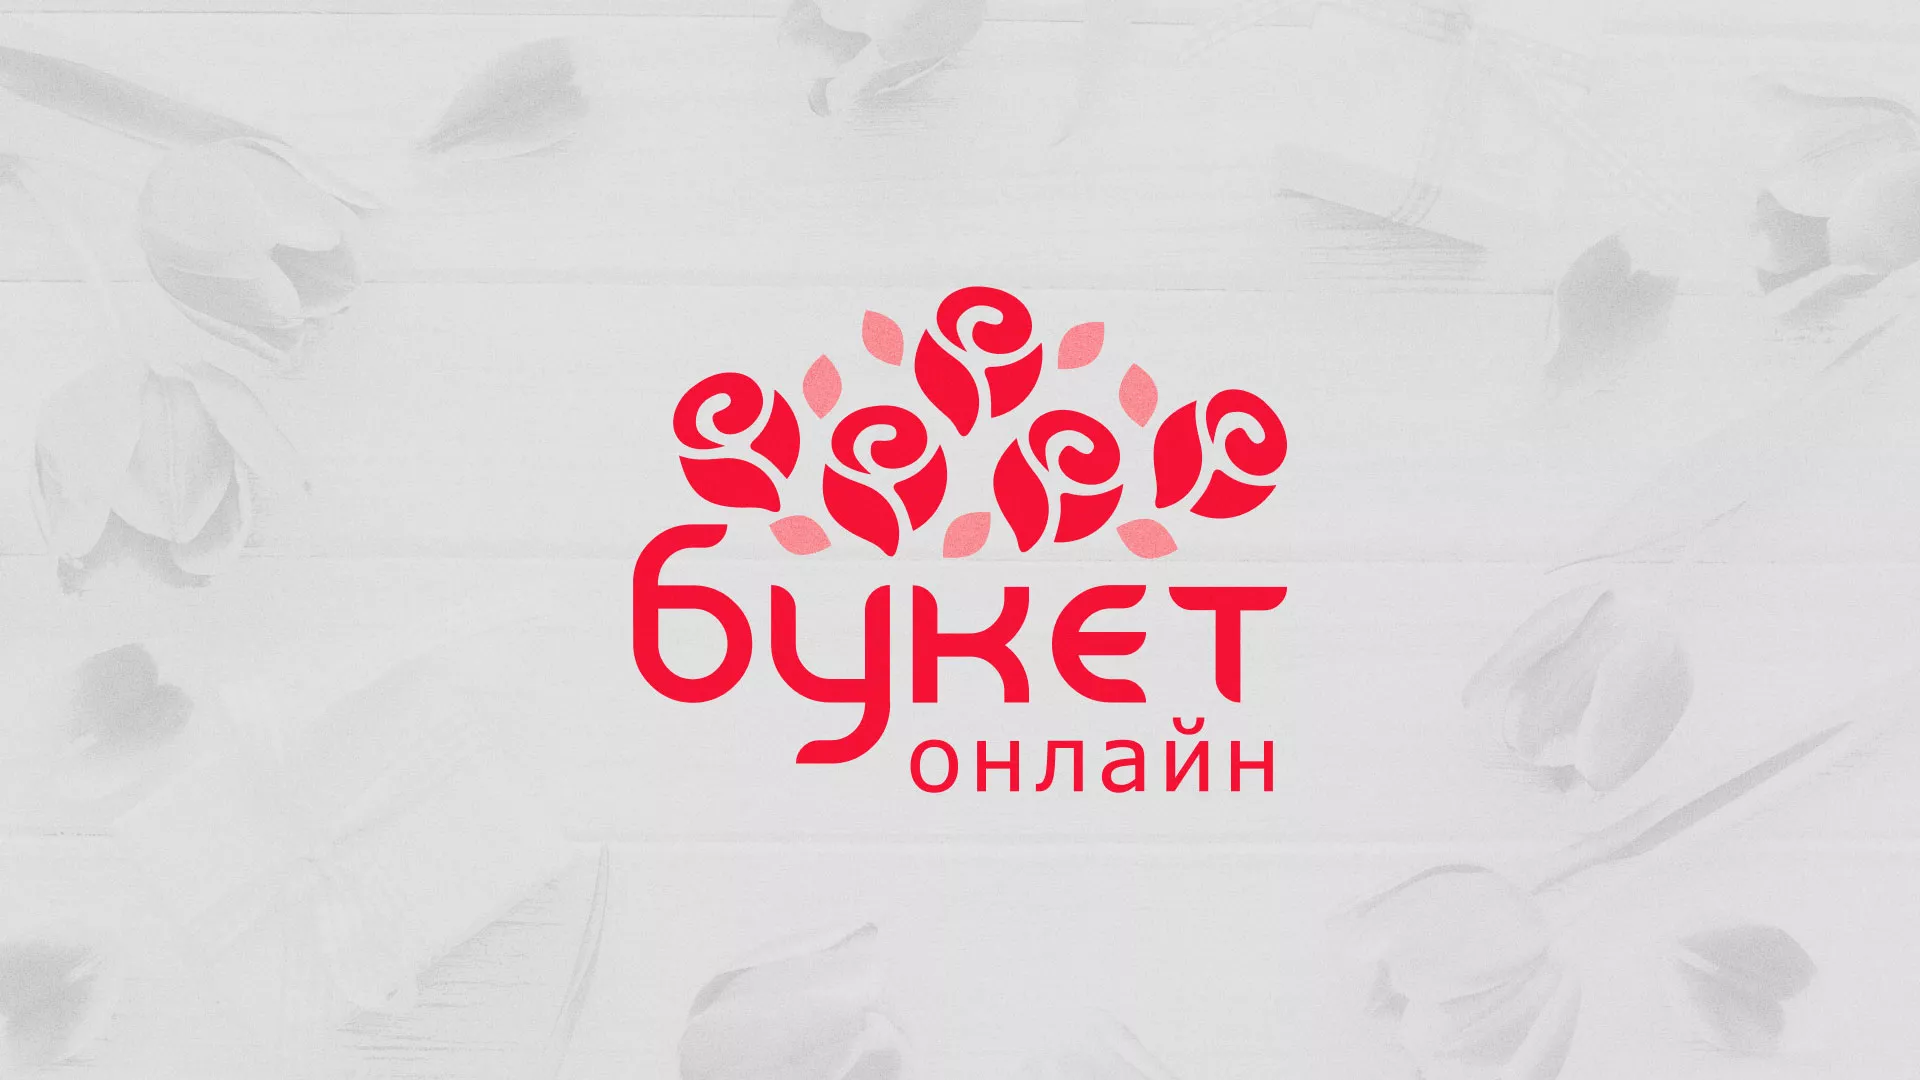 Создание интернет-магазина «Букет-онлайн» по цветам в Дальнегорске